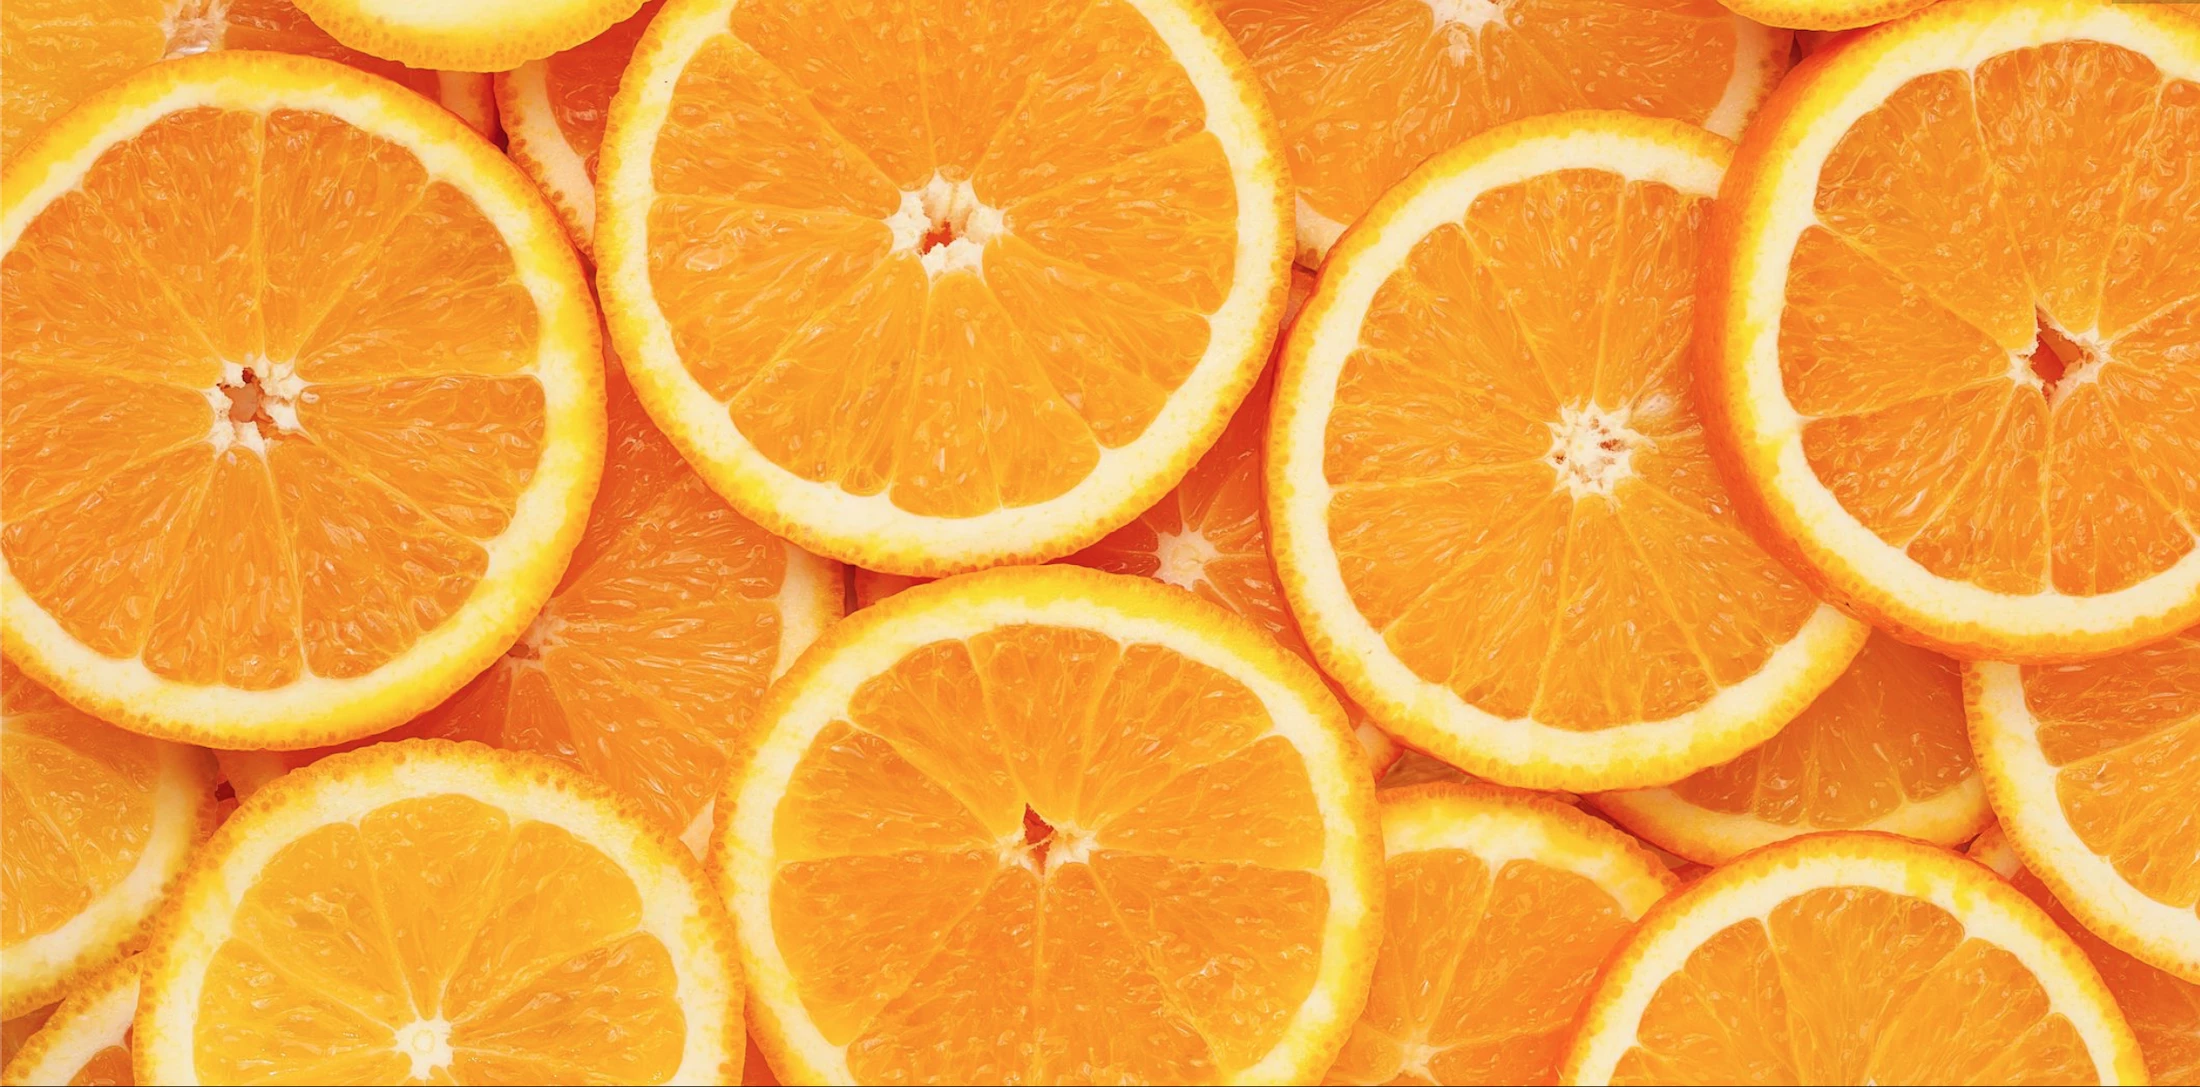 r97-oranges-copy.png